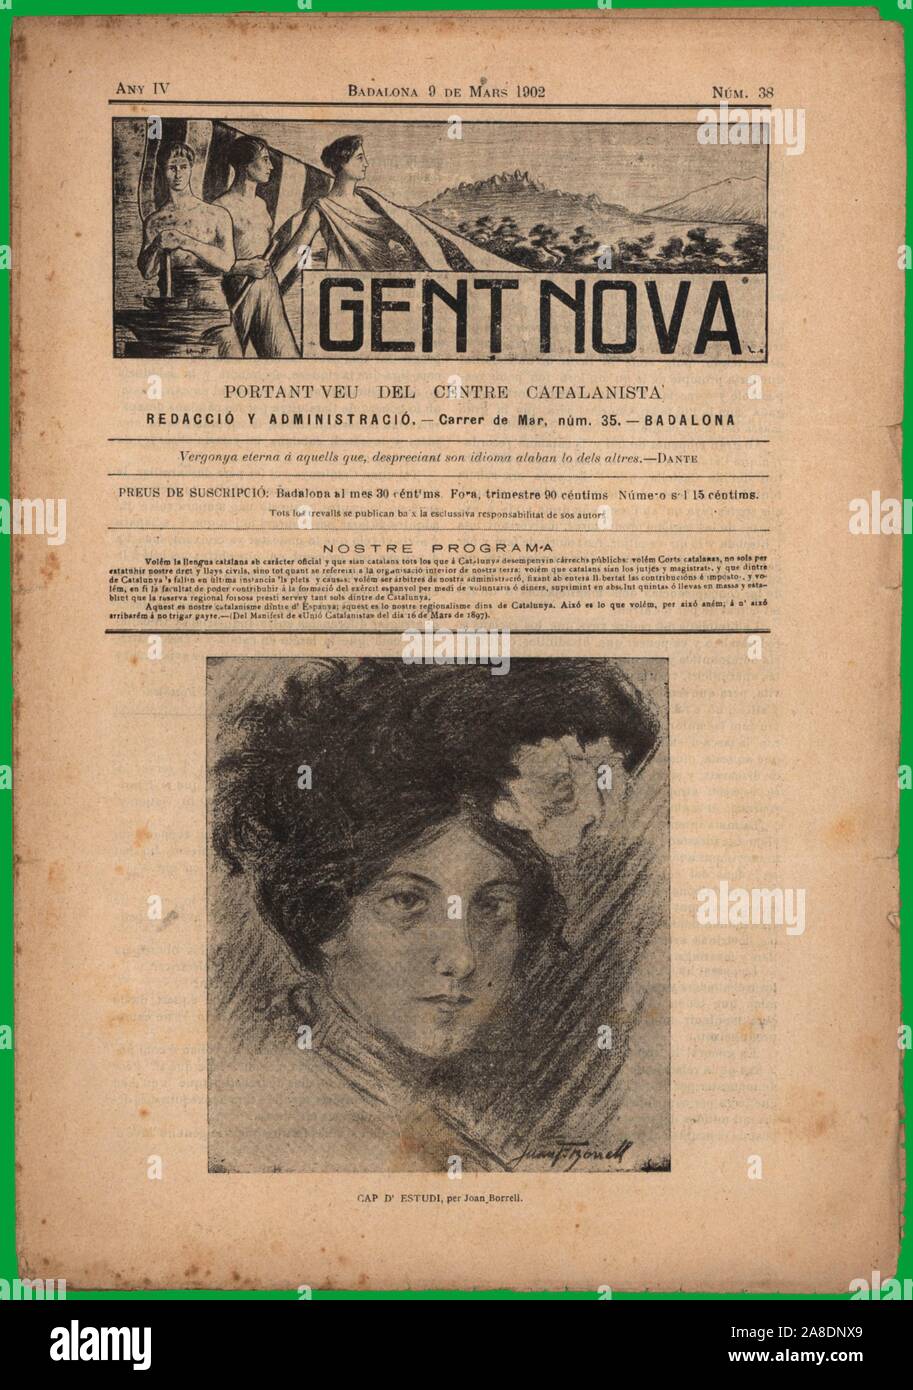 Portada de la revista Gent Nova, portavoz del Centre Catalanista. Editada en Badalona, marzo de 1902. Stock Photo